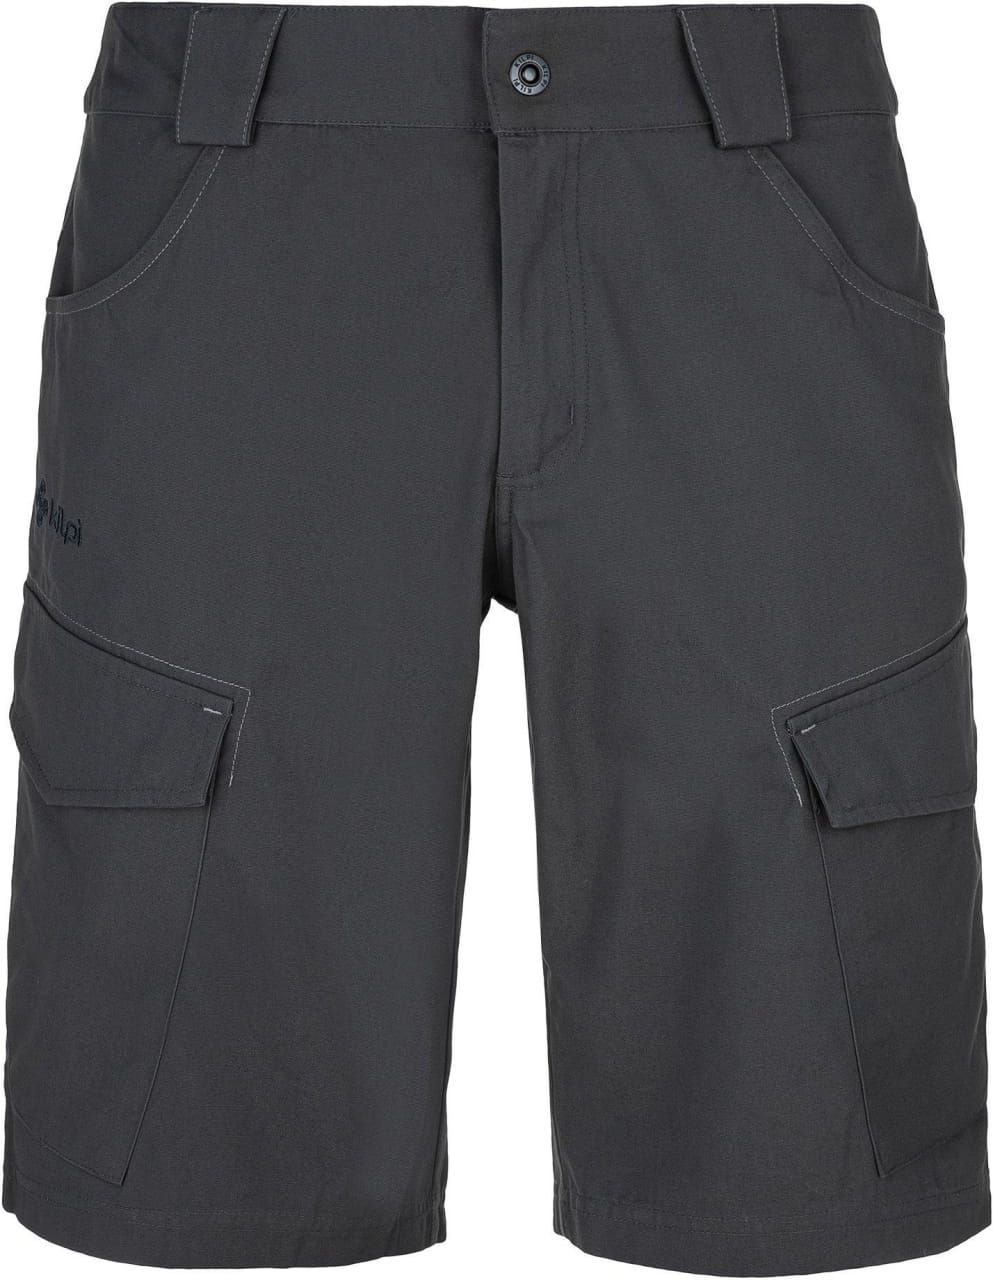 Universal-Shorts für Männer Kilpi Breeze